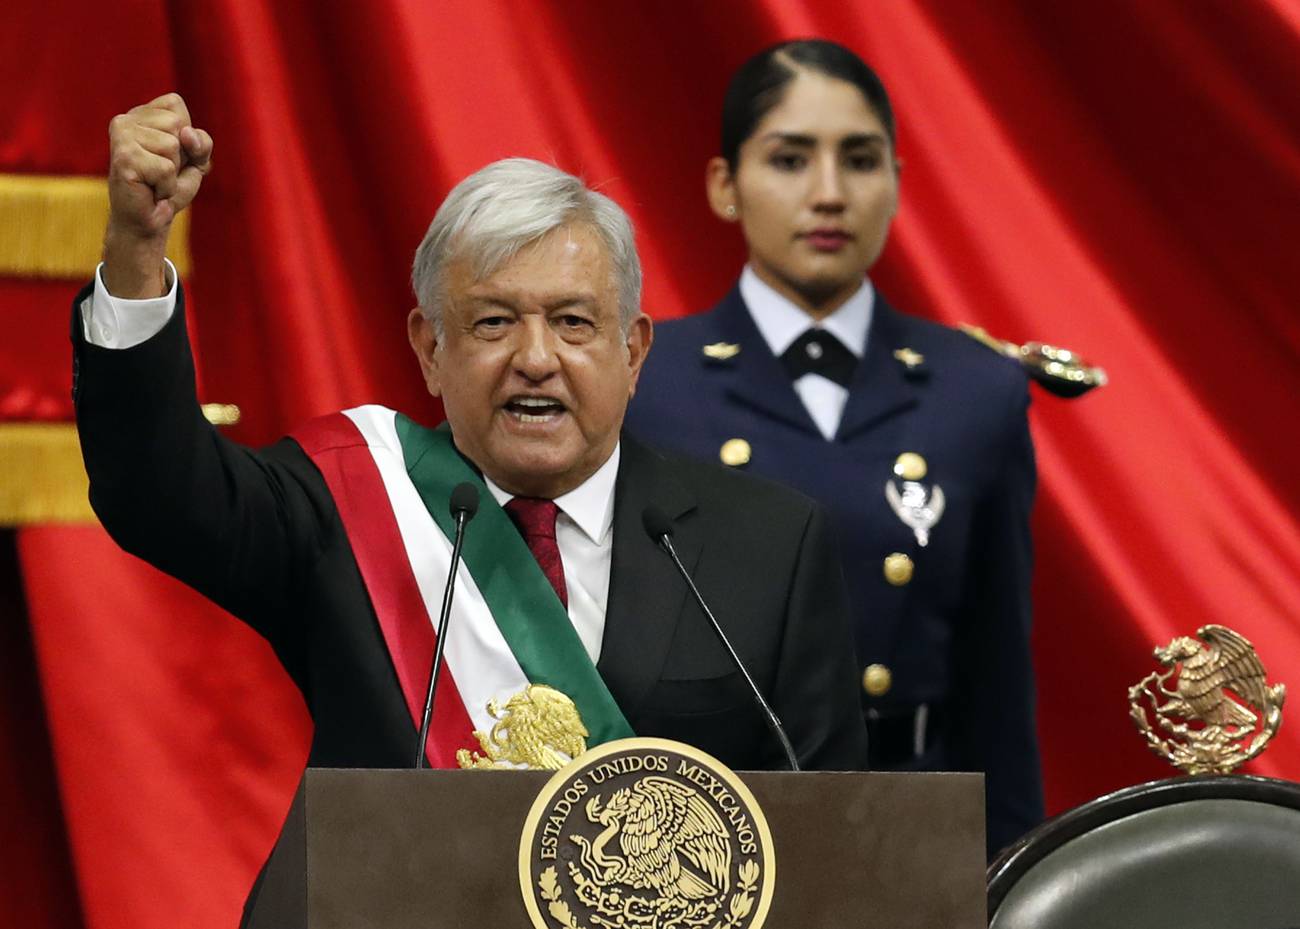 Transformación y transformismo   Horizontes del naciente gobierno de López Obrador